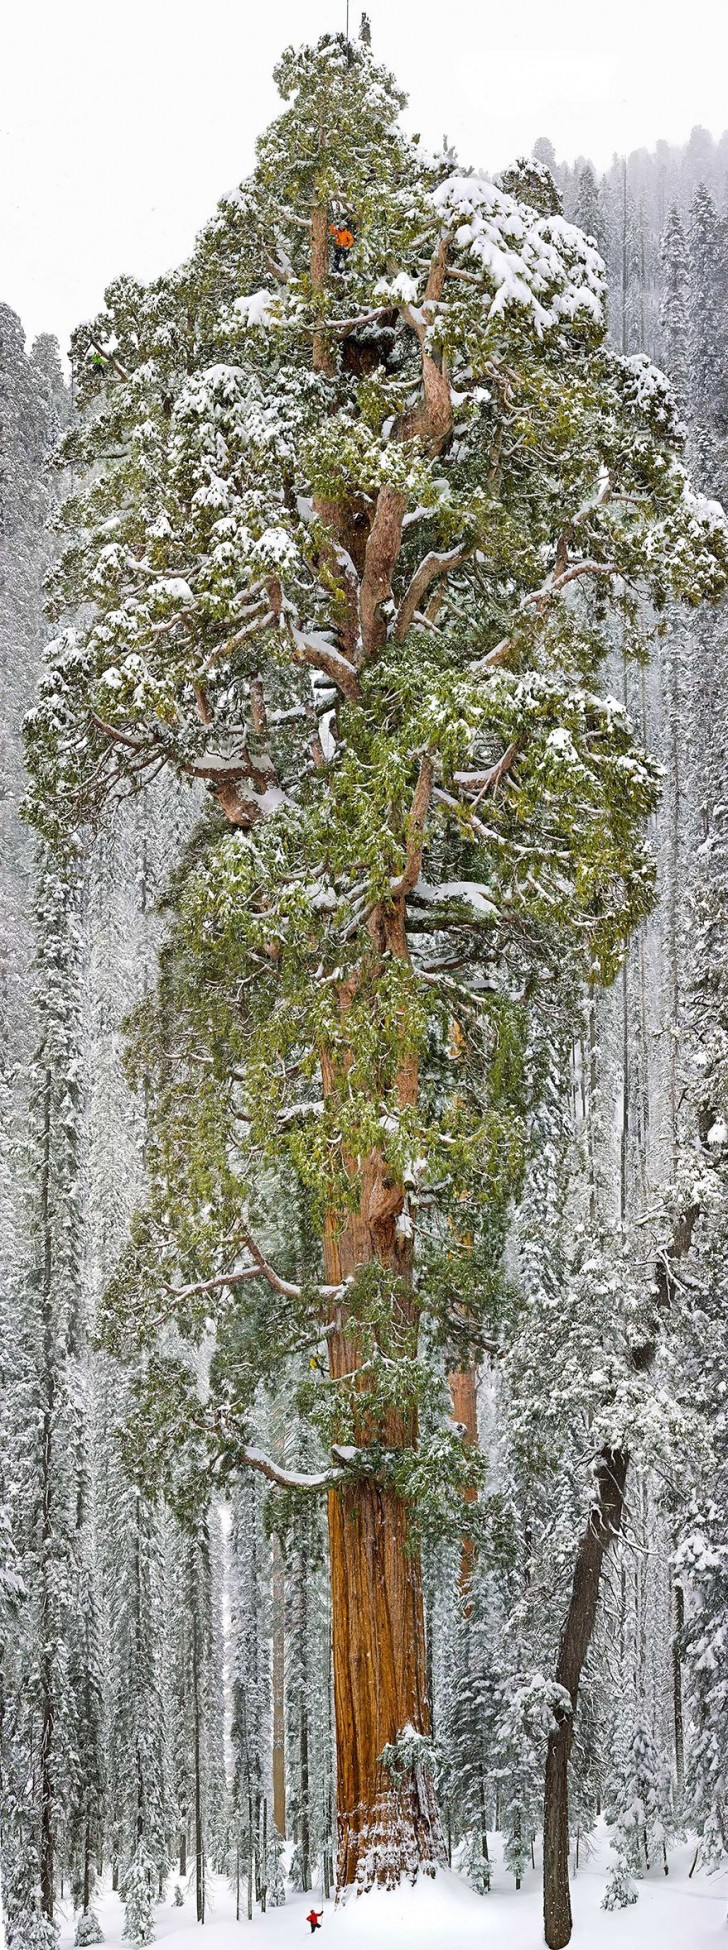 Le troisième Sequoia le plus grand du monde est situé au National Park Sequoya, en Californie, où se trouve ce spécimen de 73 mètres de haut et d'une circonférence de 28 mètres.